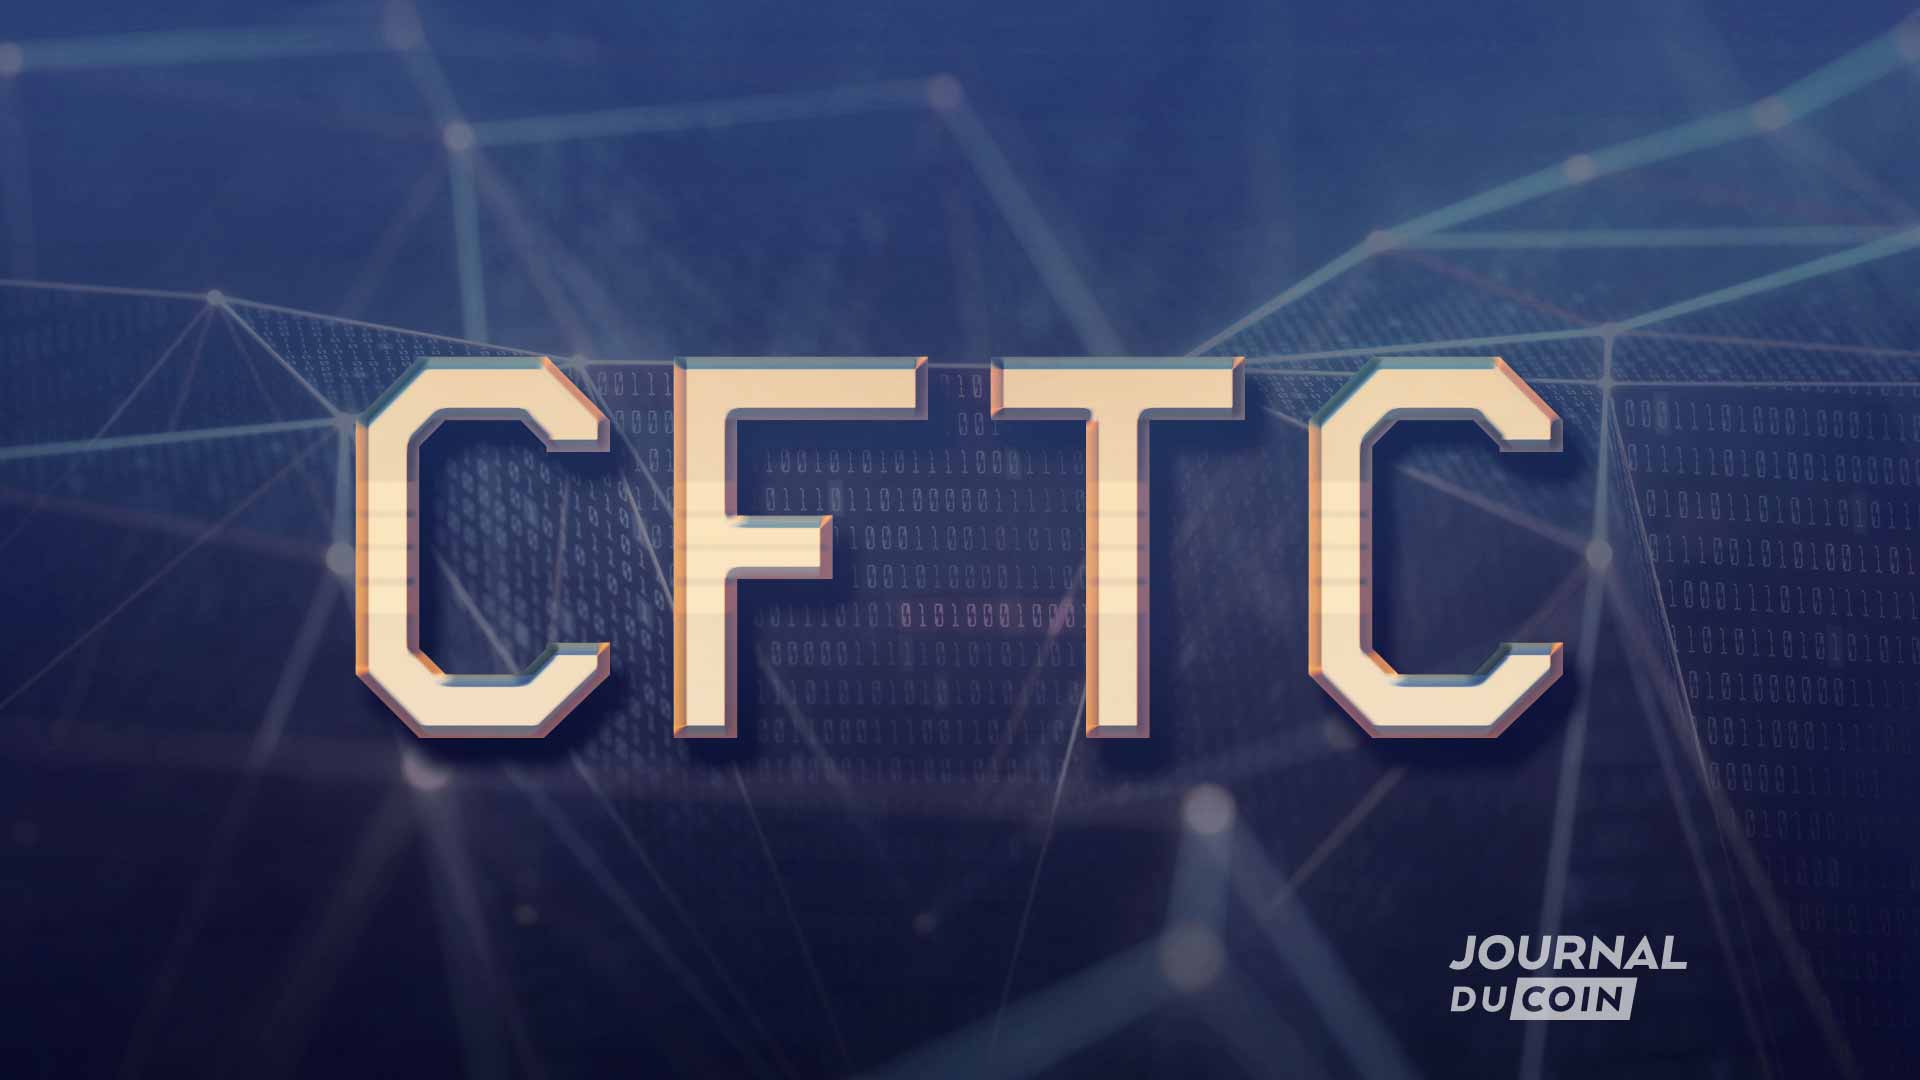 Le président de la CFTC s'exprime sur The Merge d'Ethereum